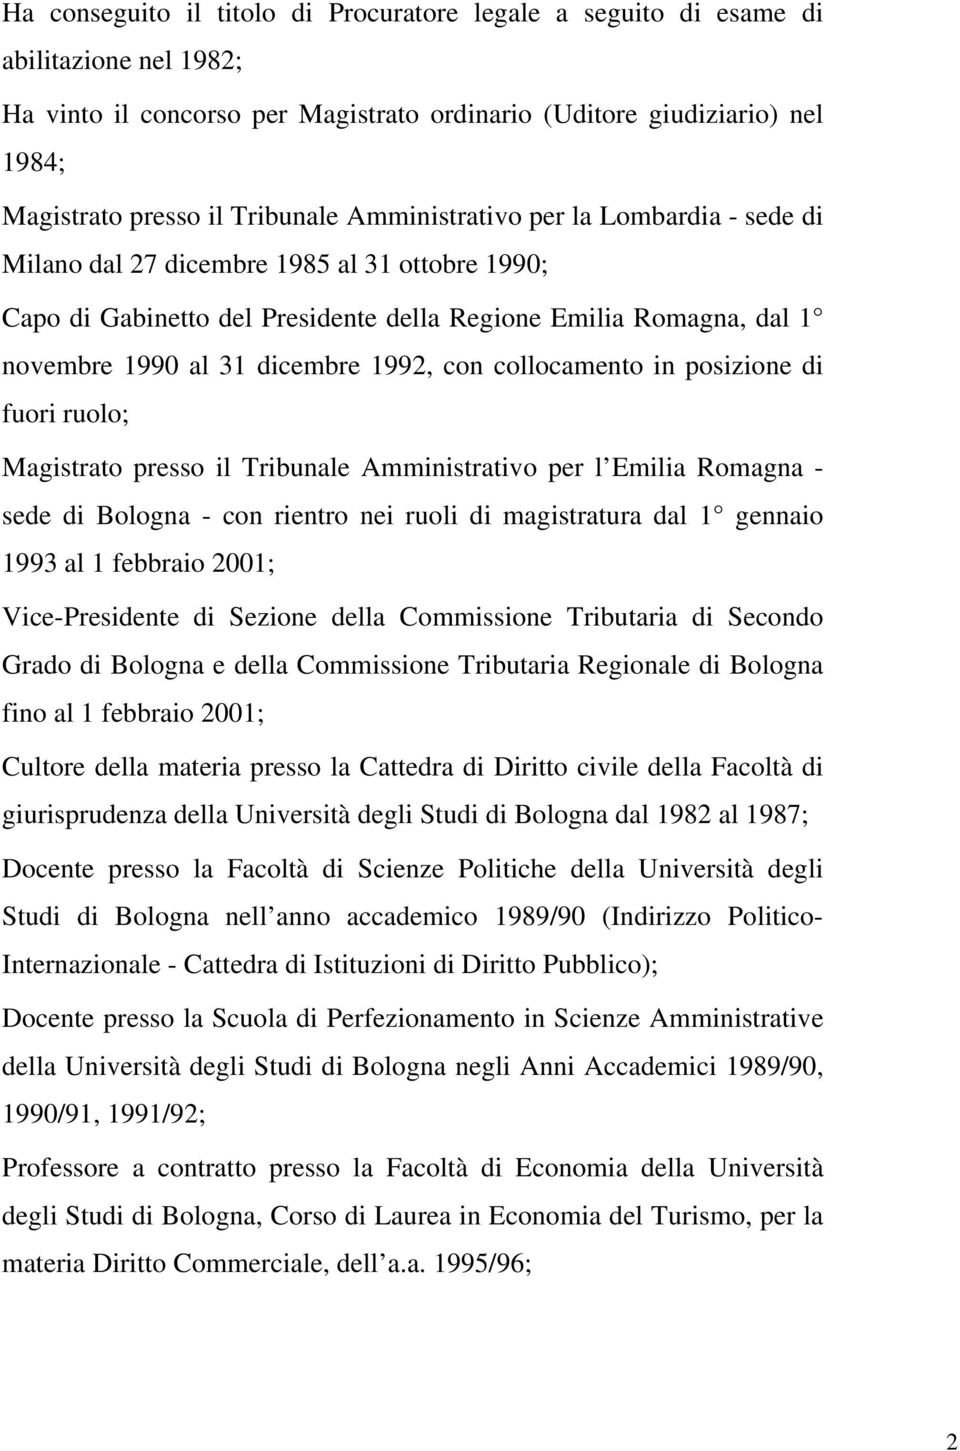 collocamento in posizione di fuori ruolo; Magistrato presso il Tribunale Amministrativo per l Emilia Romagna - sede di Bologna - con rientro nei ruoli di magistratura dal 1 gennaio 1993 al 1 febbraio